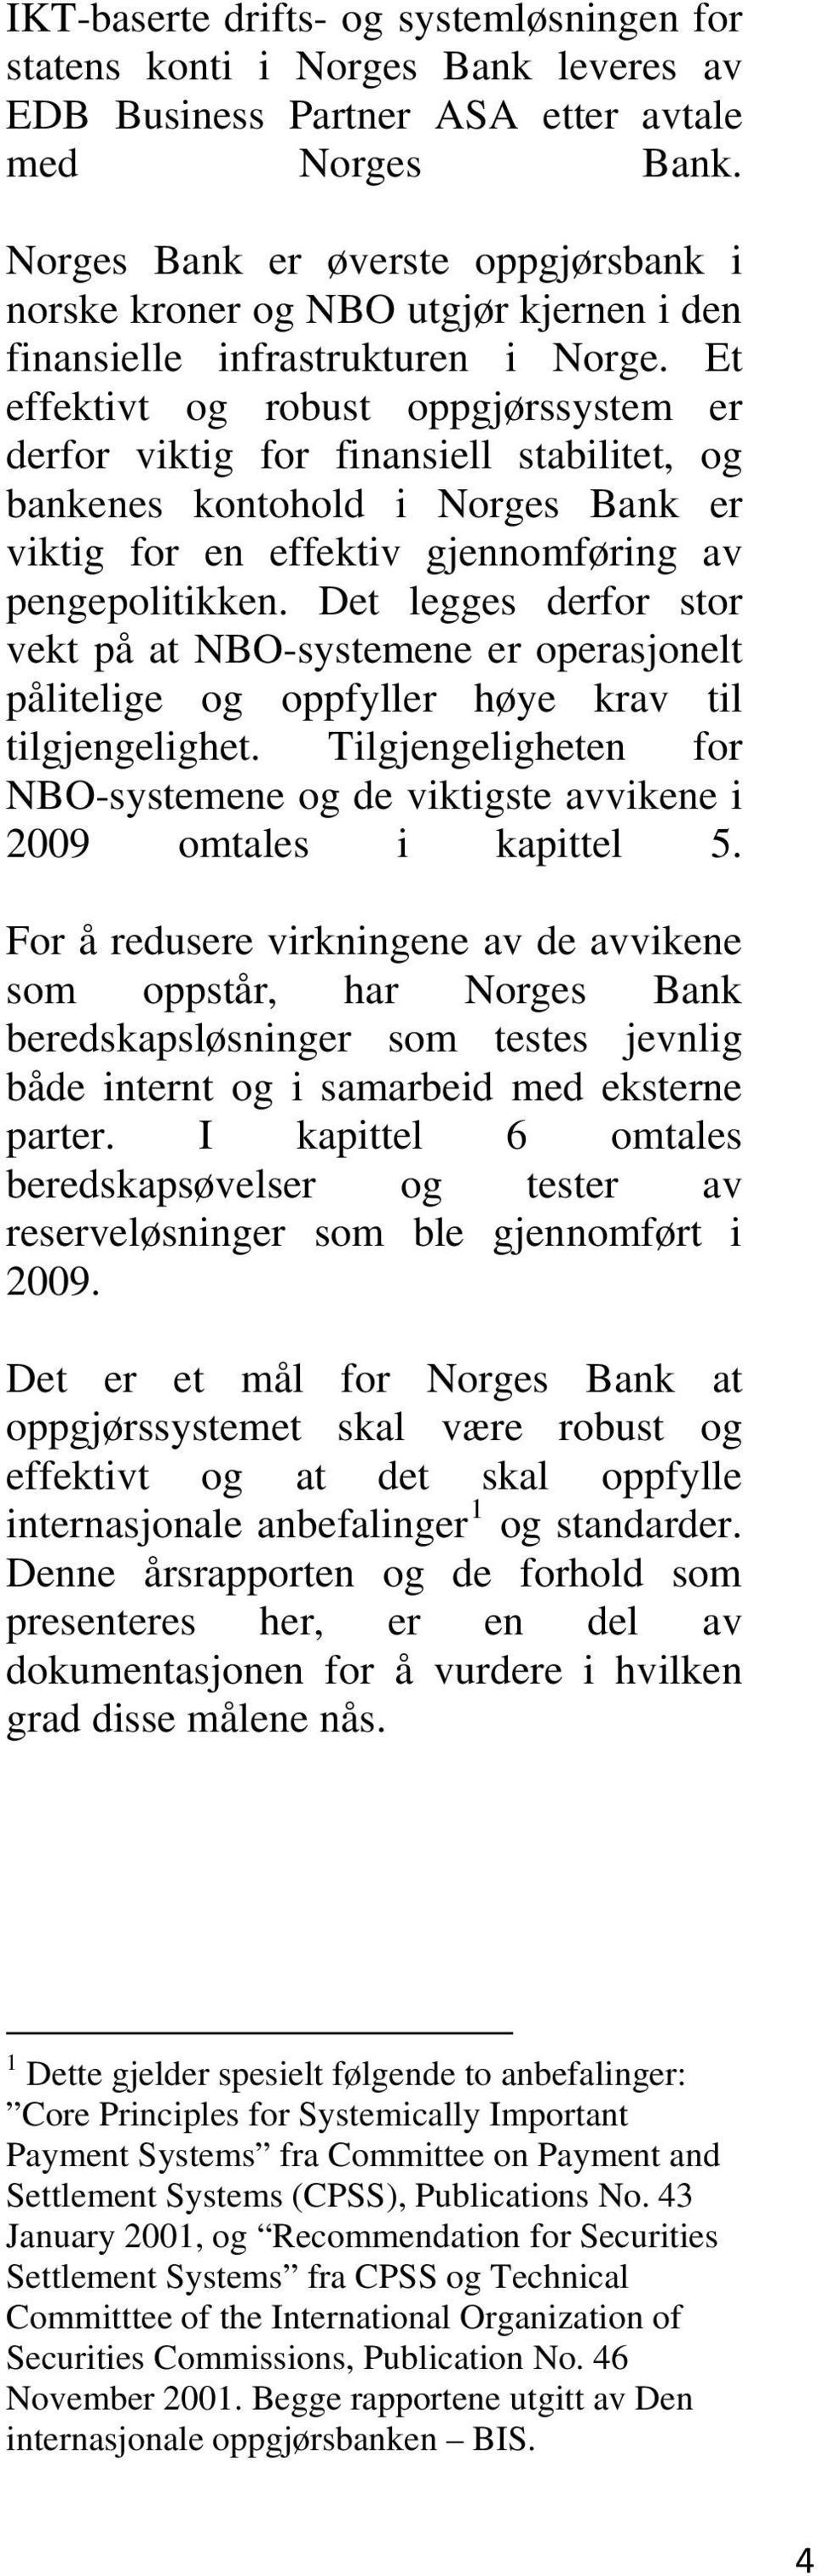 Et effektivt og robust oppgjørssystem er derfor viktig for finansiell stabilitet, og bankenes kontohold i Norges Bank er viktig for en effektiv gjennomføring av pengepolitikken.